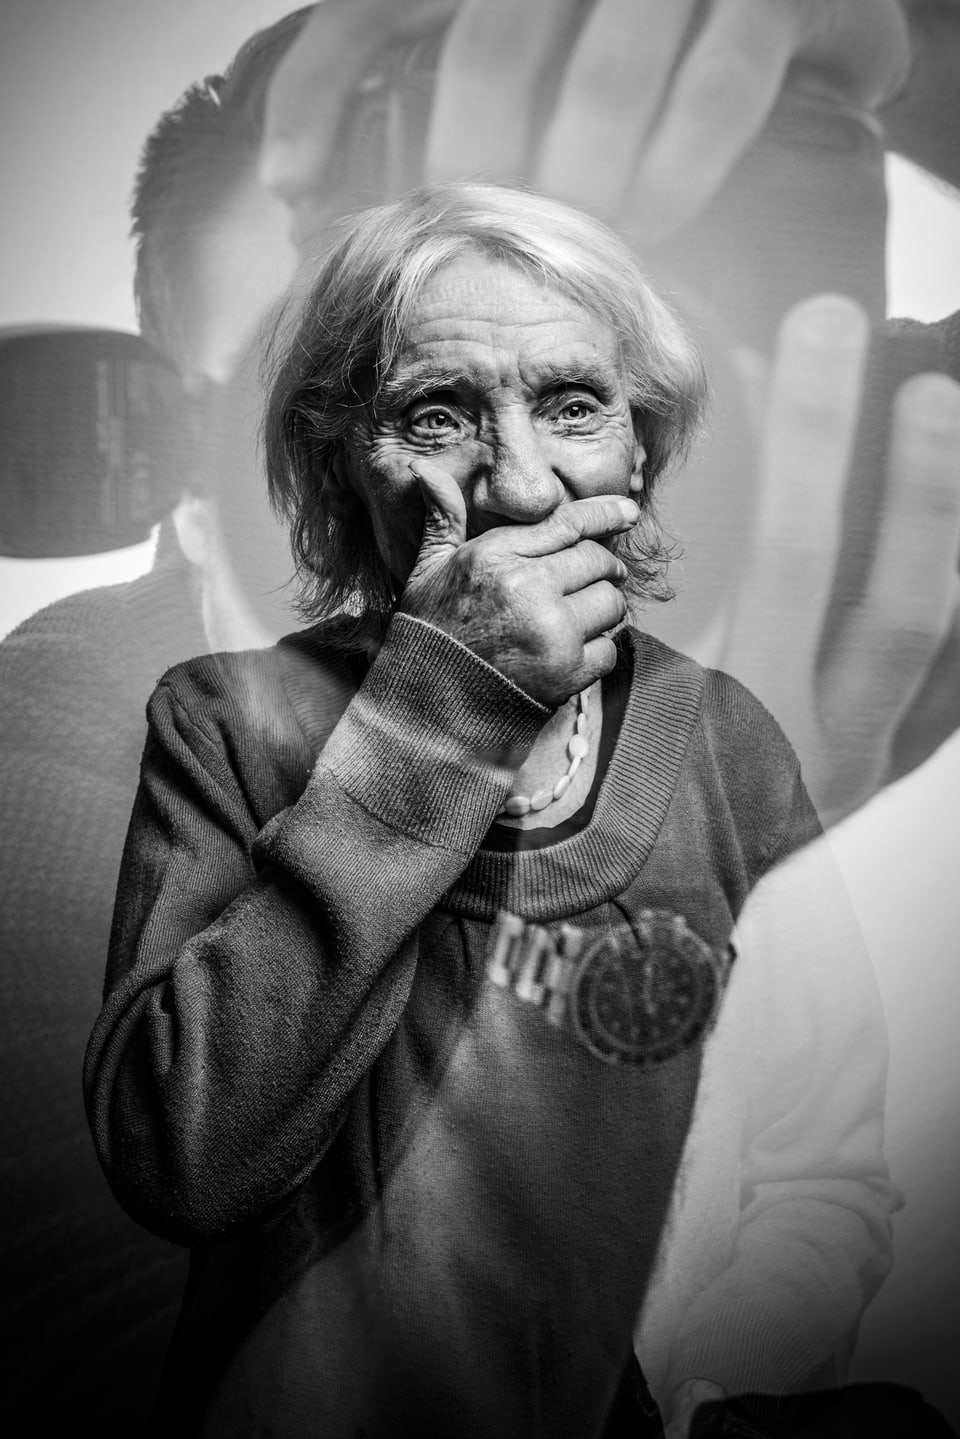 Portrait einer älteren Dame, die sich eine Hand vor den Mund hält. Im Bild spiegelt sich der Fotograf.